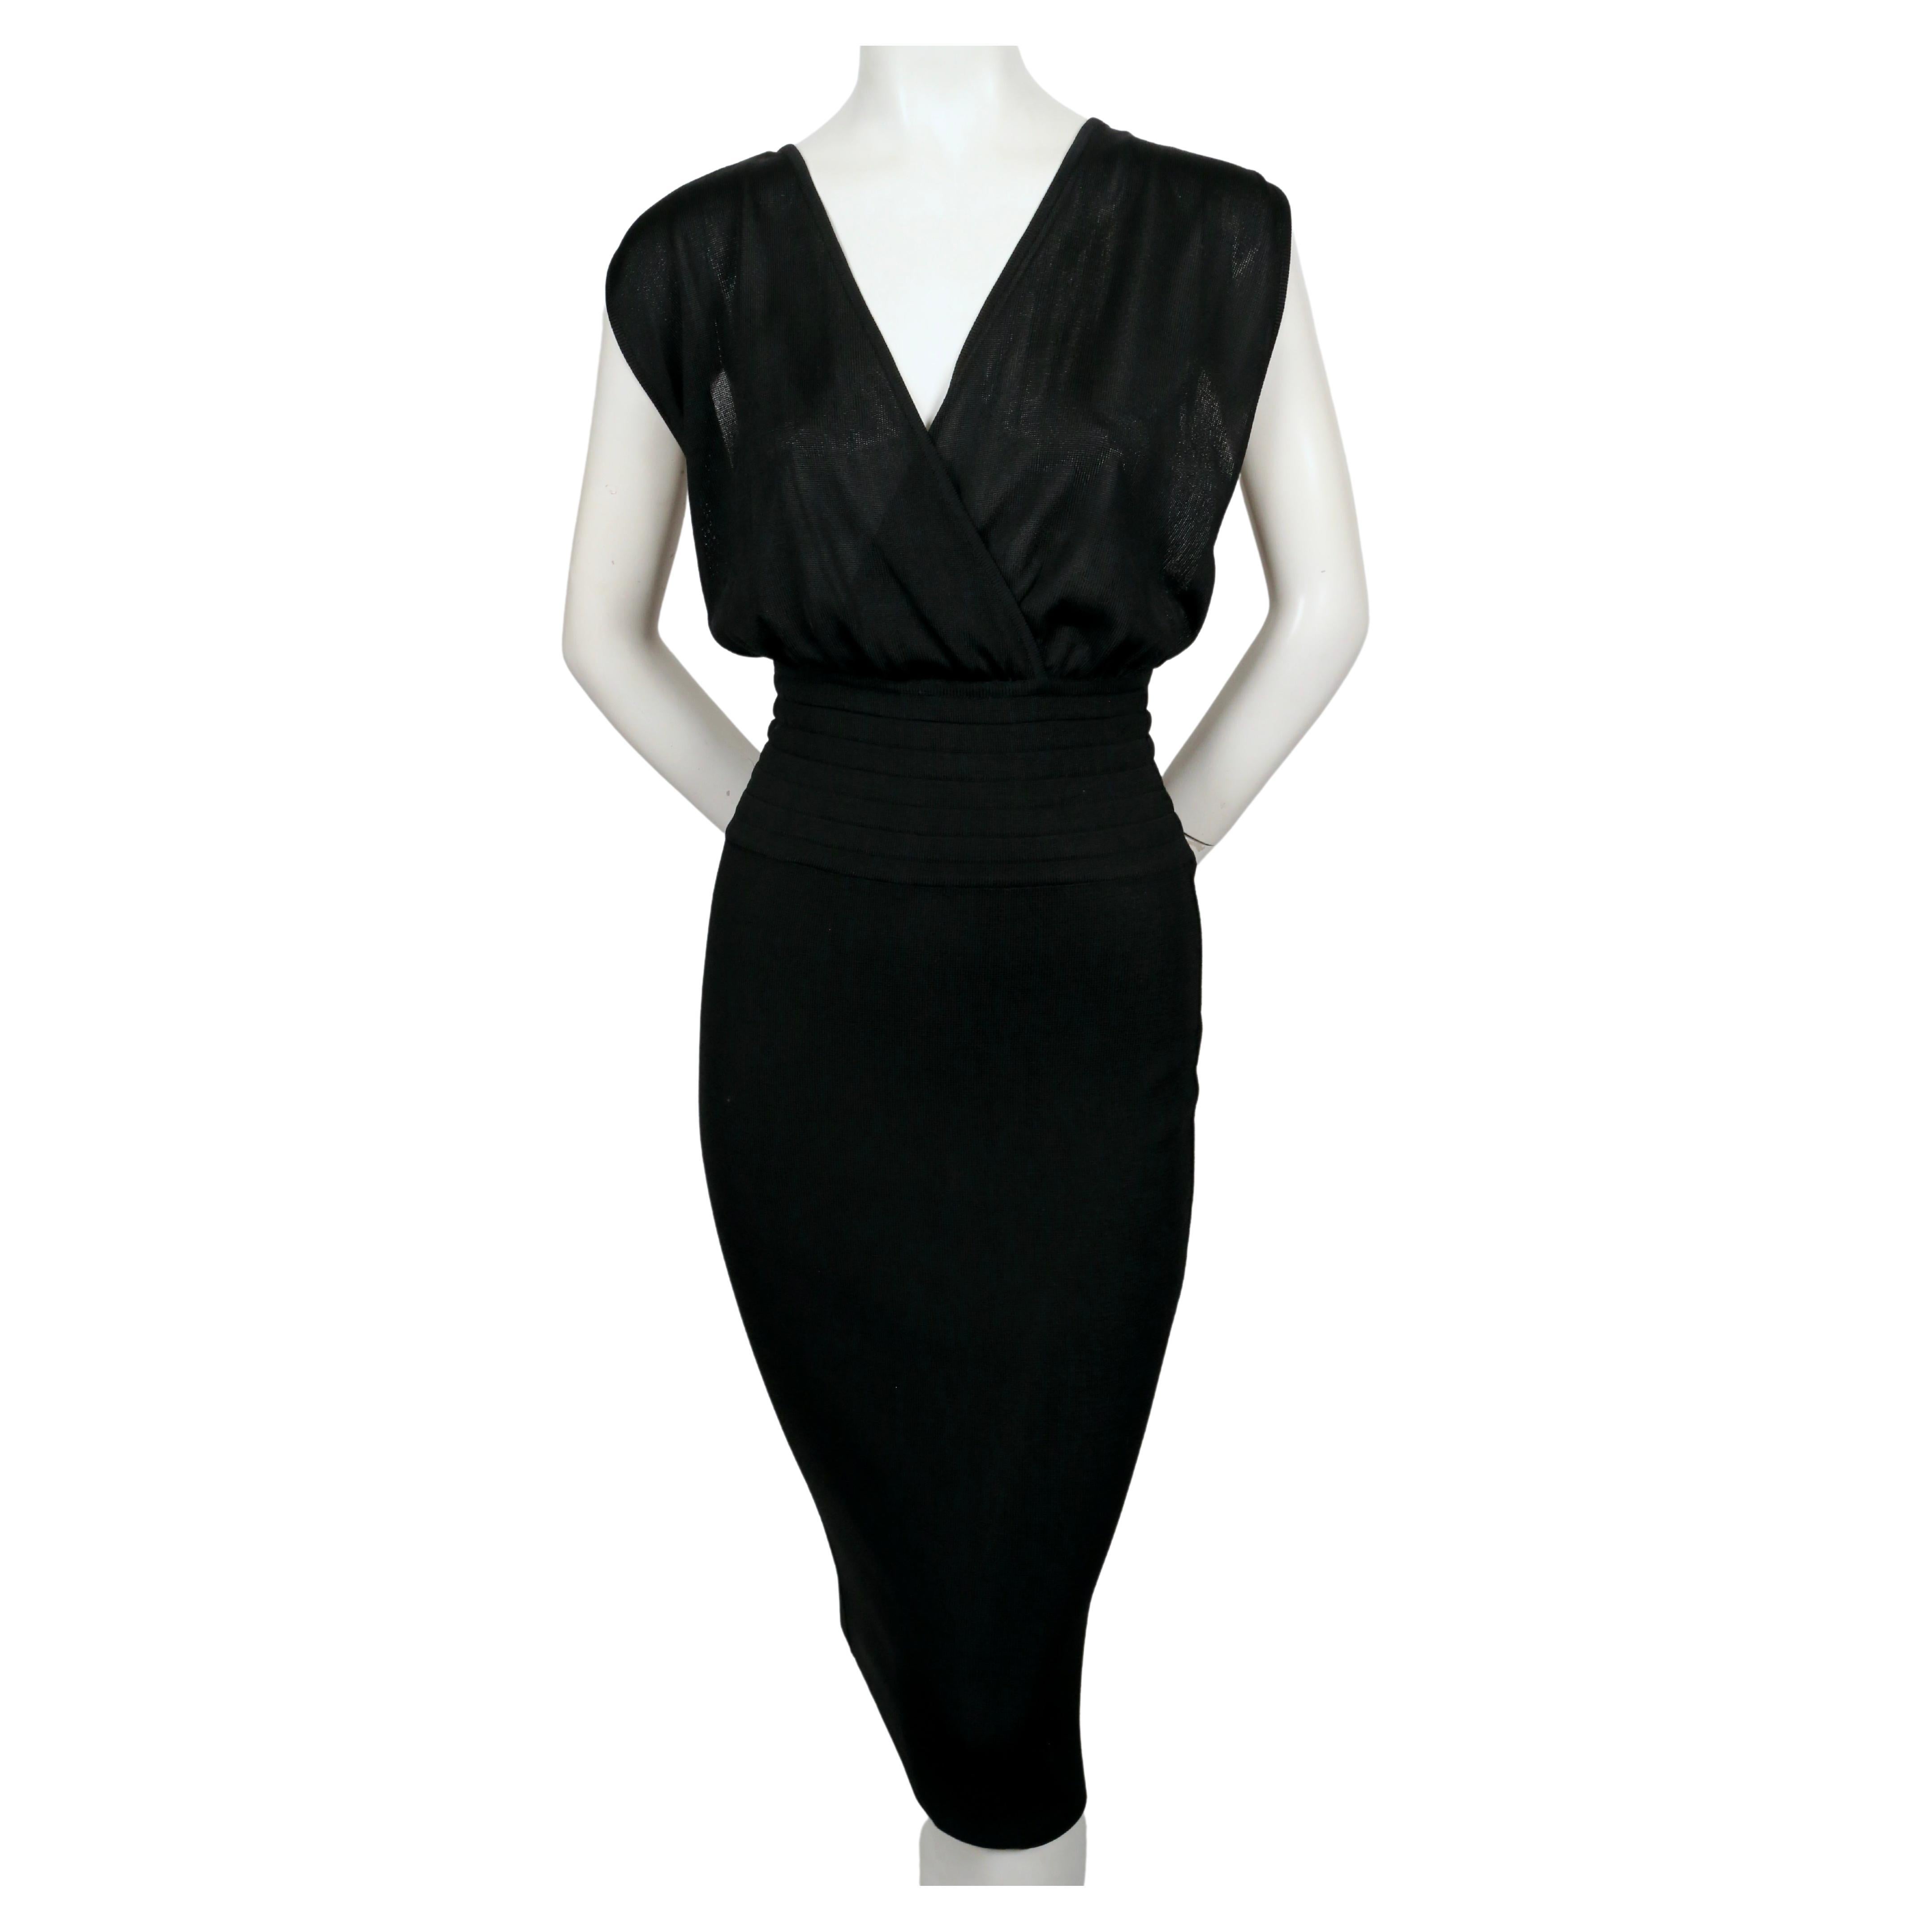 Très rare robe noir de jais à taille élastiquée et corsage drapé d'Azzedine Alaia datant de 1984. Labellisé en taille 